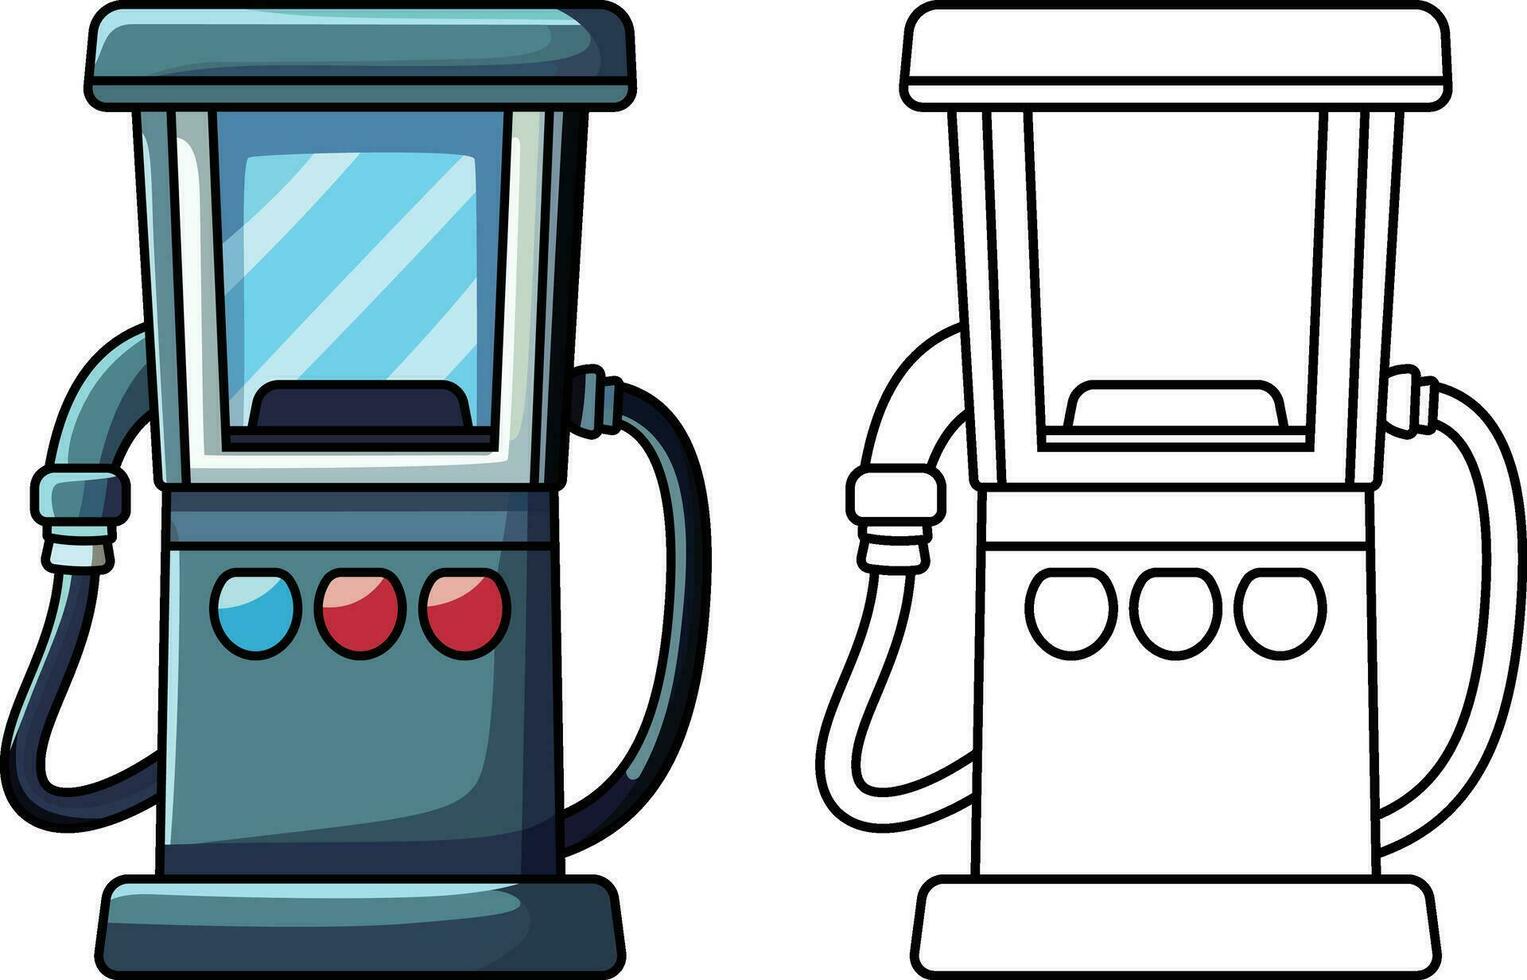 gaz station dessin animé style vecteur illustration , remplissage station , carburant station ou essence station vecteur image, coloré et noir et blanc Stock image